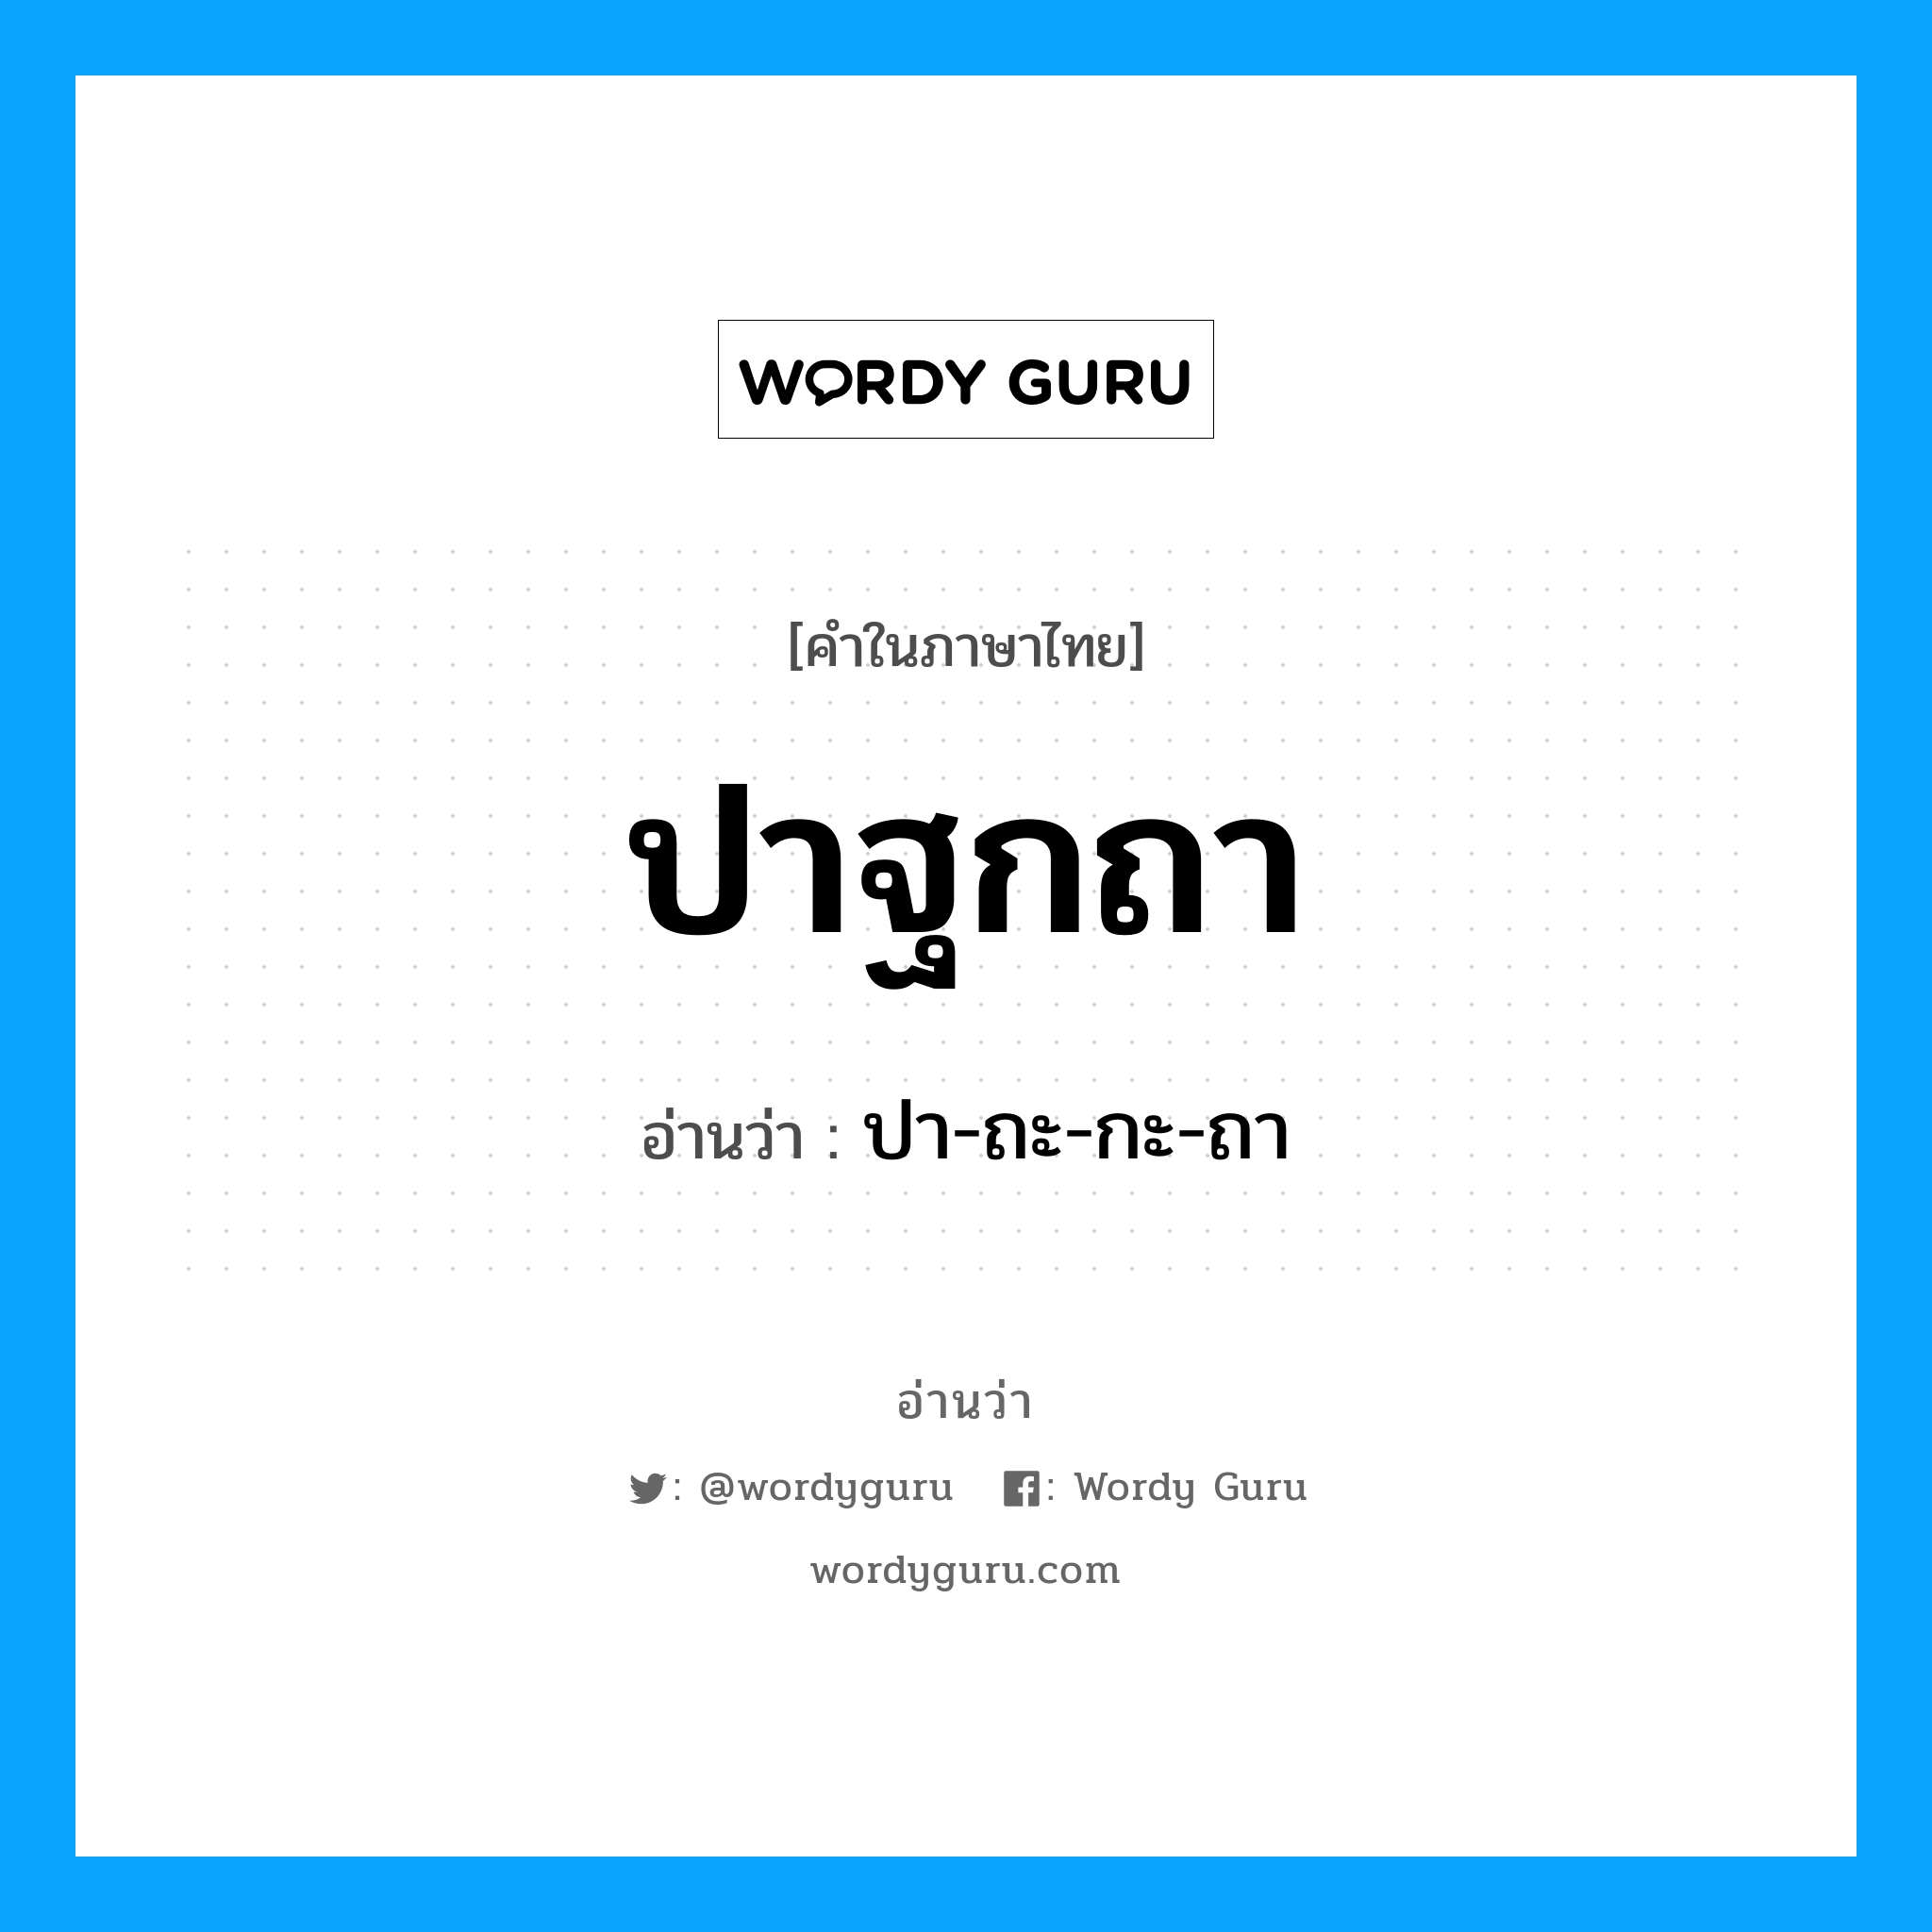 ปา-ถะ-กะ-ถา เป็นคำอ่านของคำไหน?, คำในภาษาไทย ปา-ถะ-กะ-ถา อ่านว่า ปาฐกถา